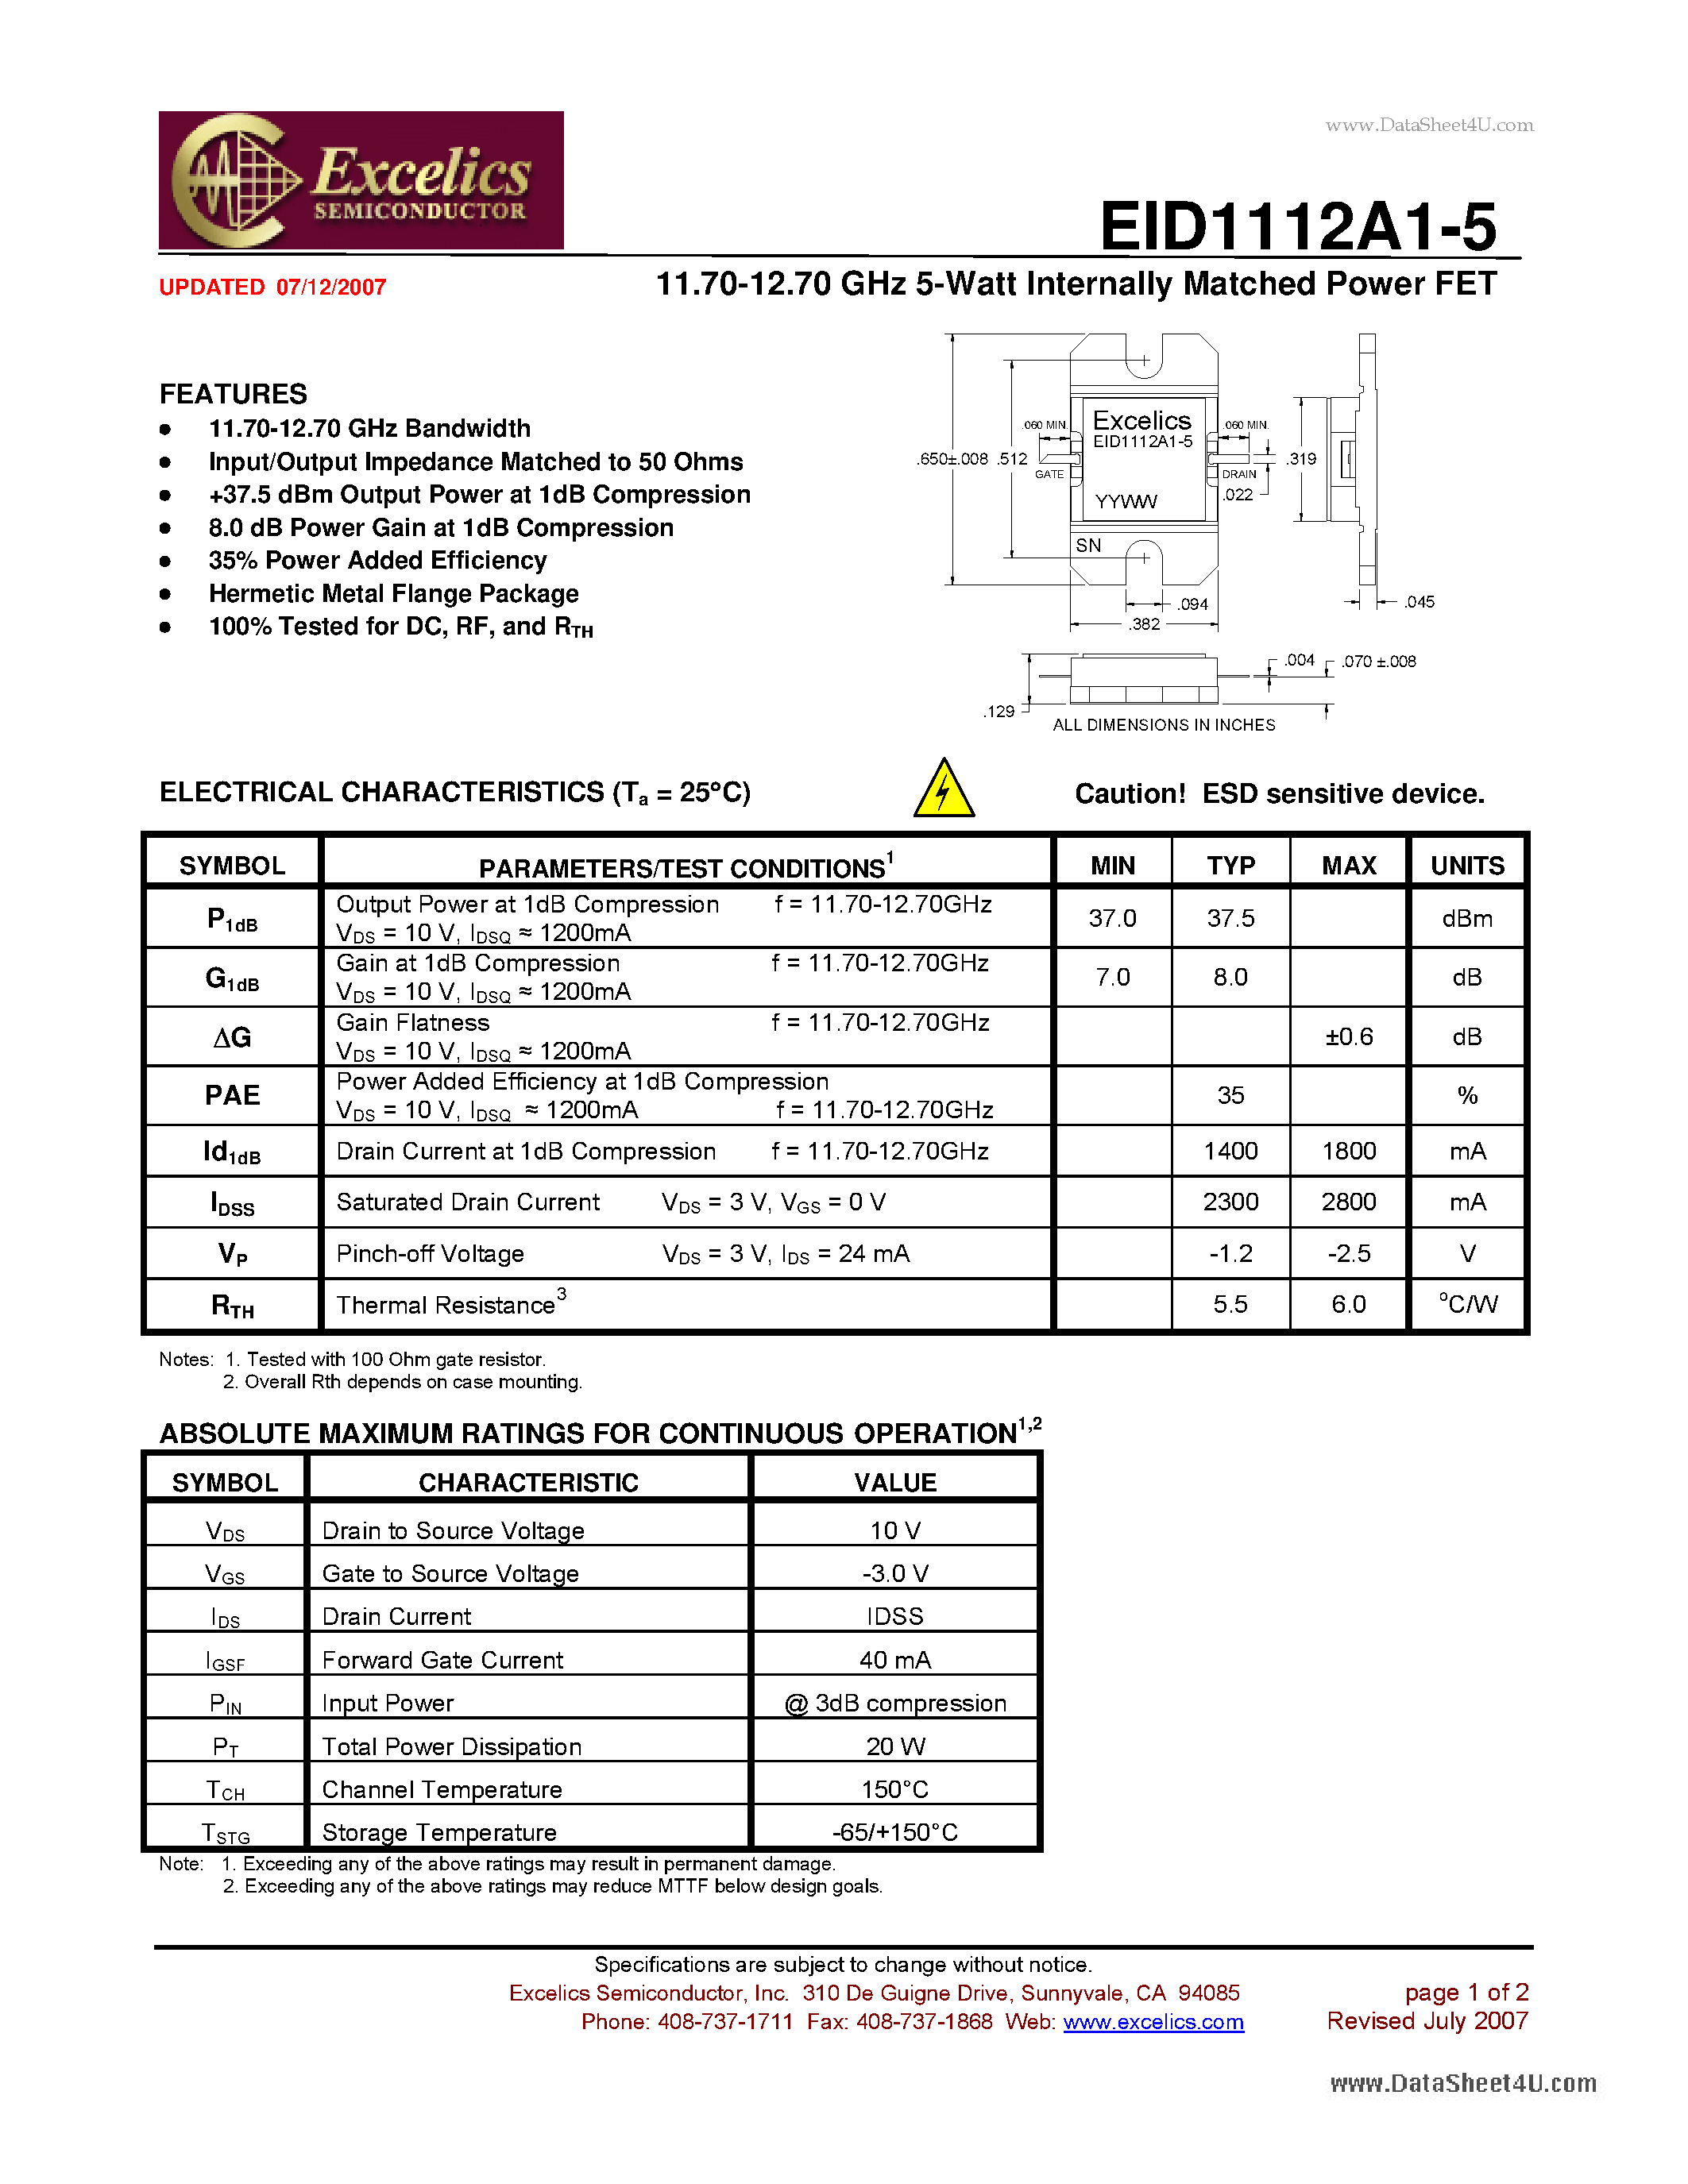 Даташит EID1112A1-5 - 11.70-12.70 GHz 5-Watt Internally Matched Power FET страница 1